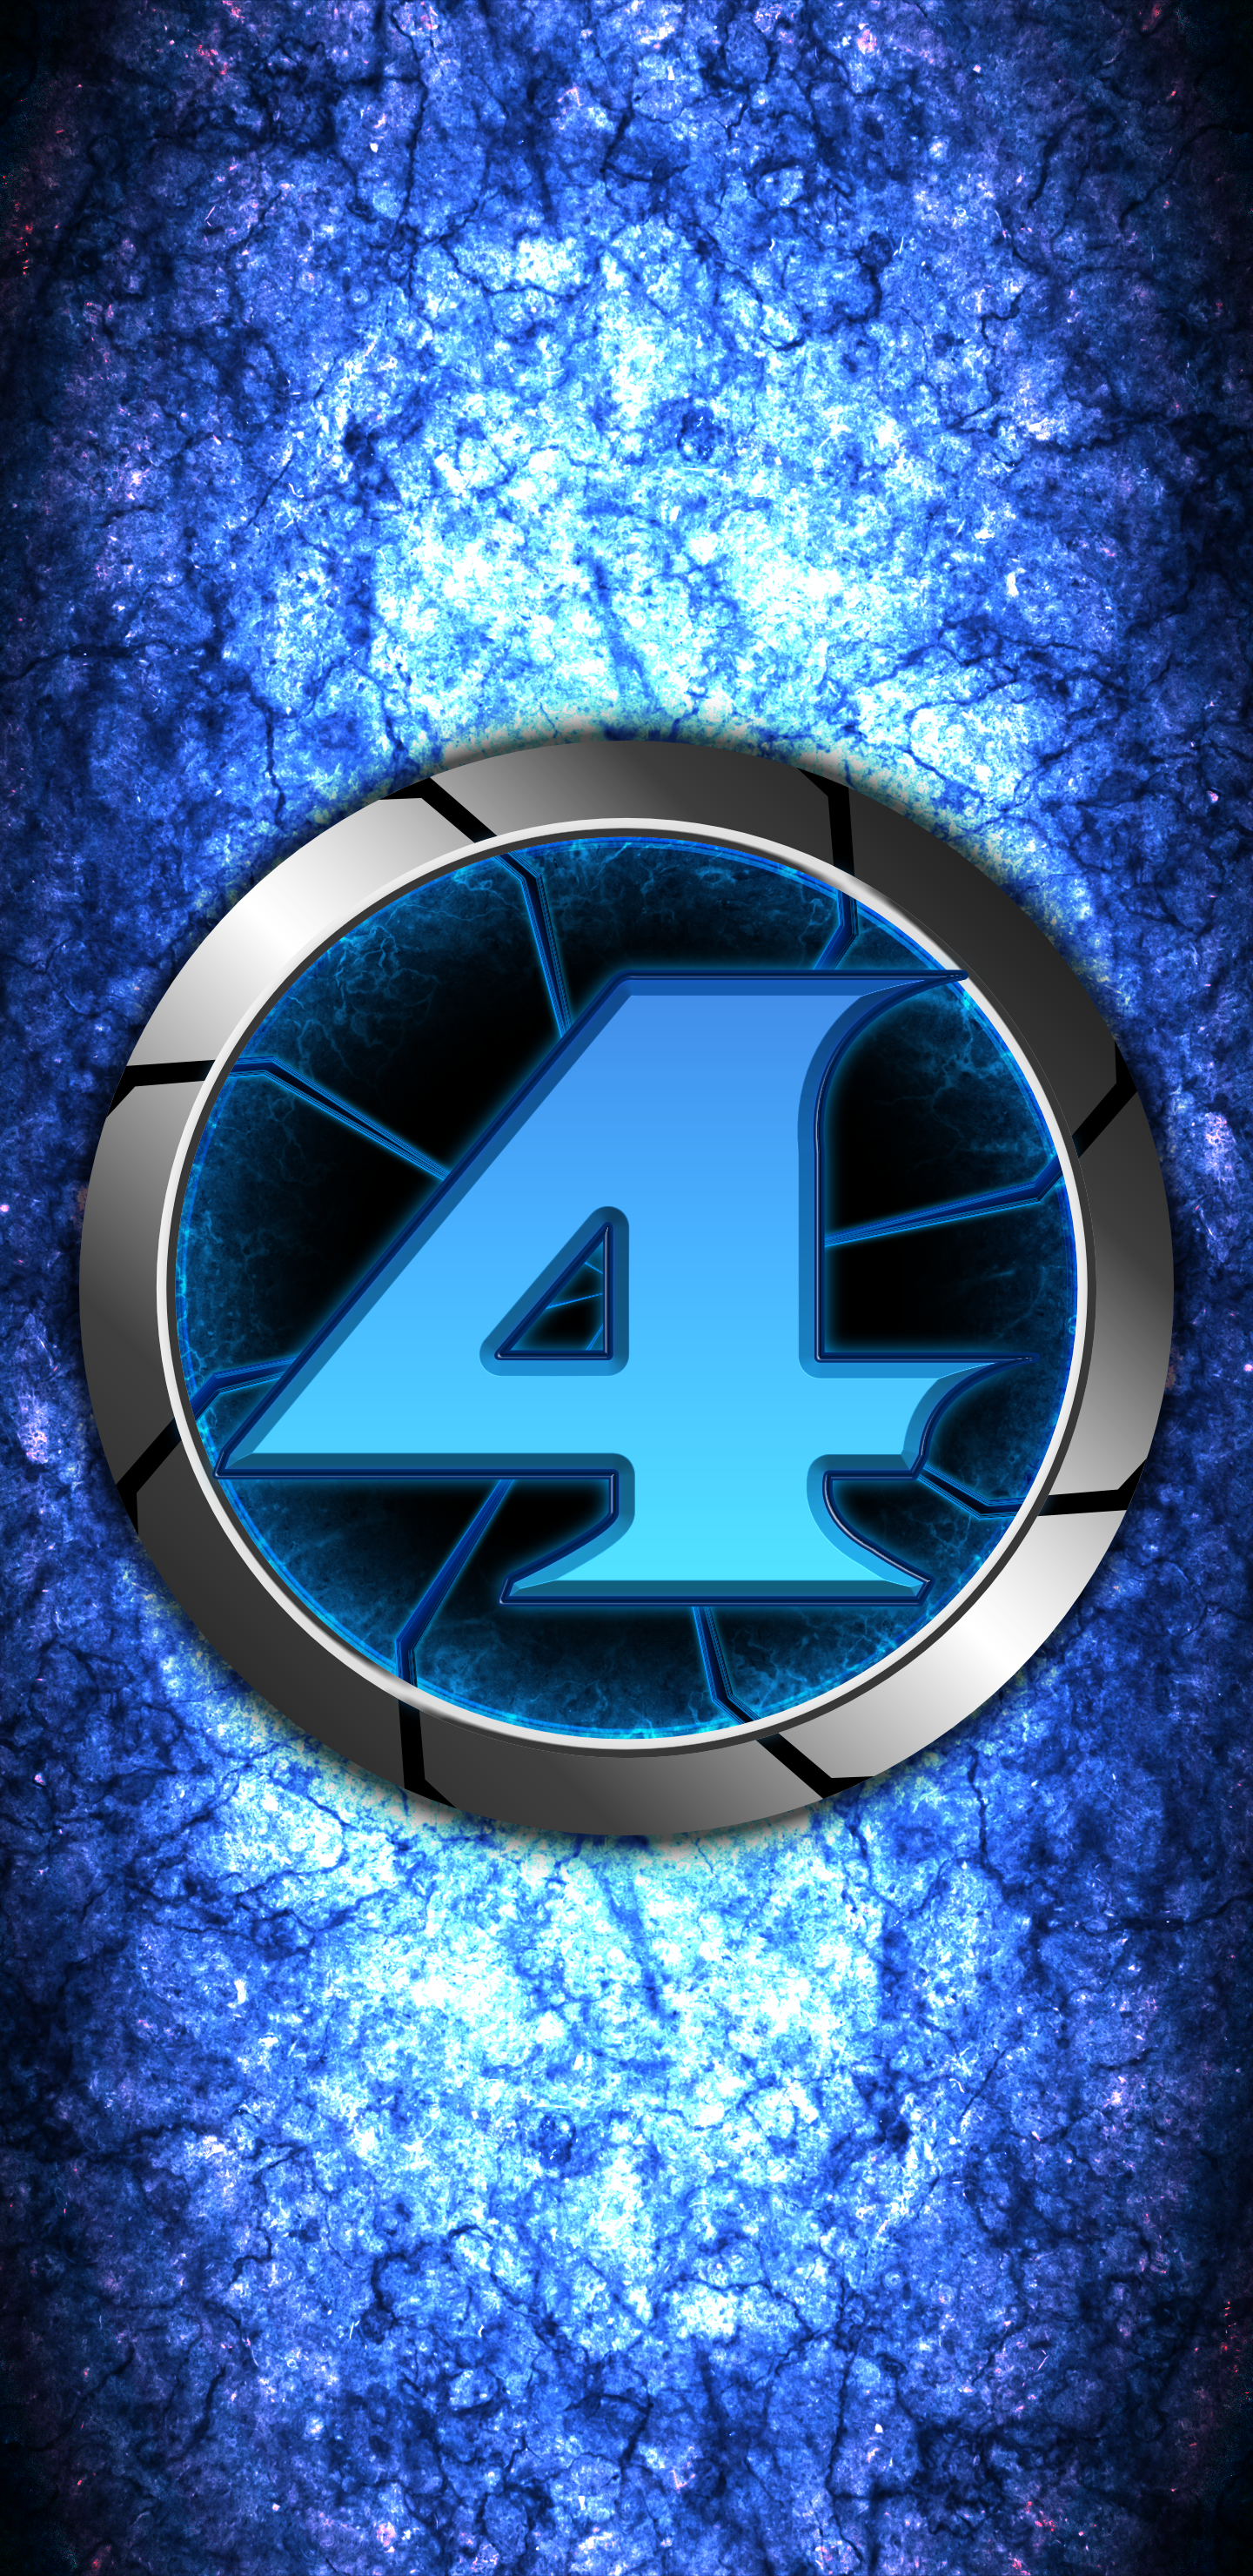 Metroid Prime 4 Logo (Concept) Wallpaper